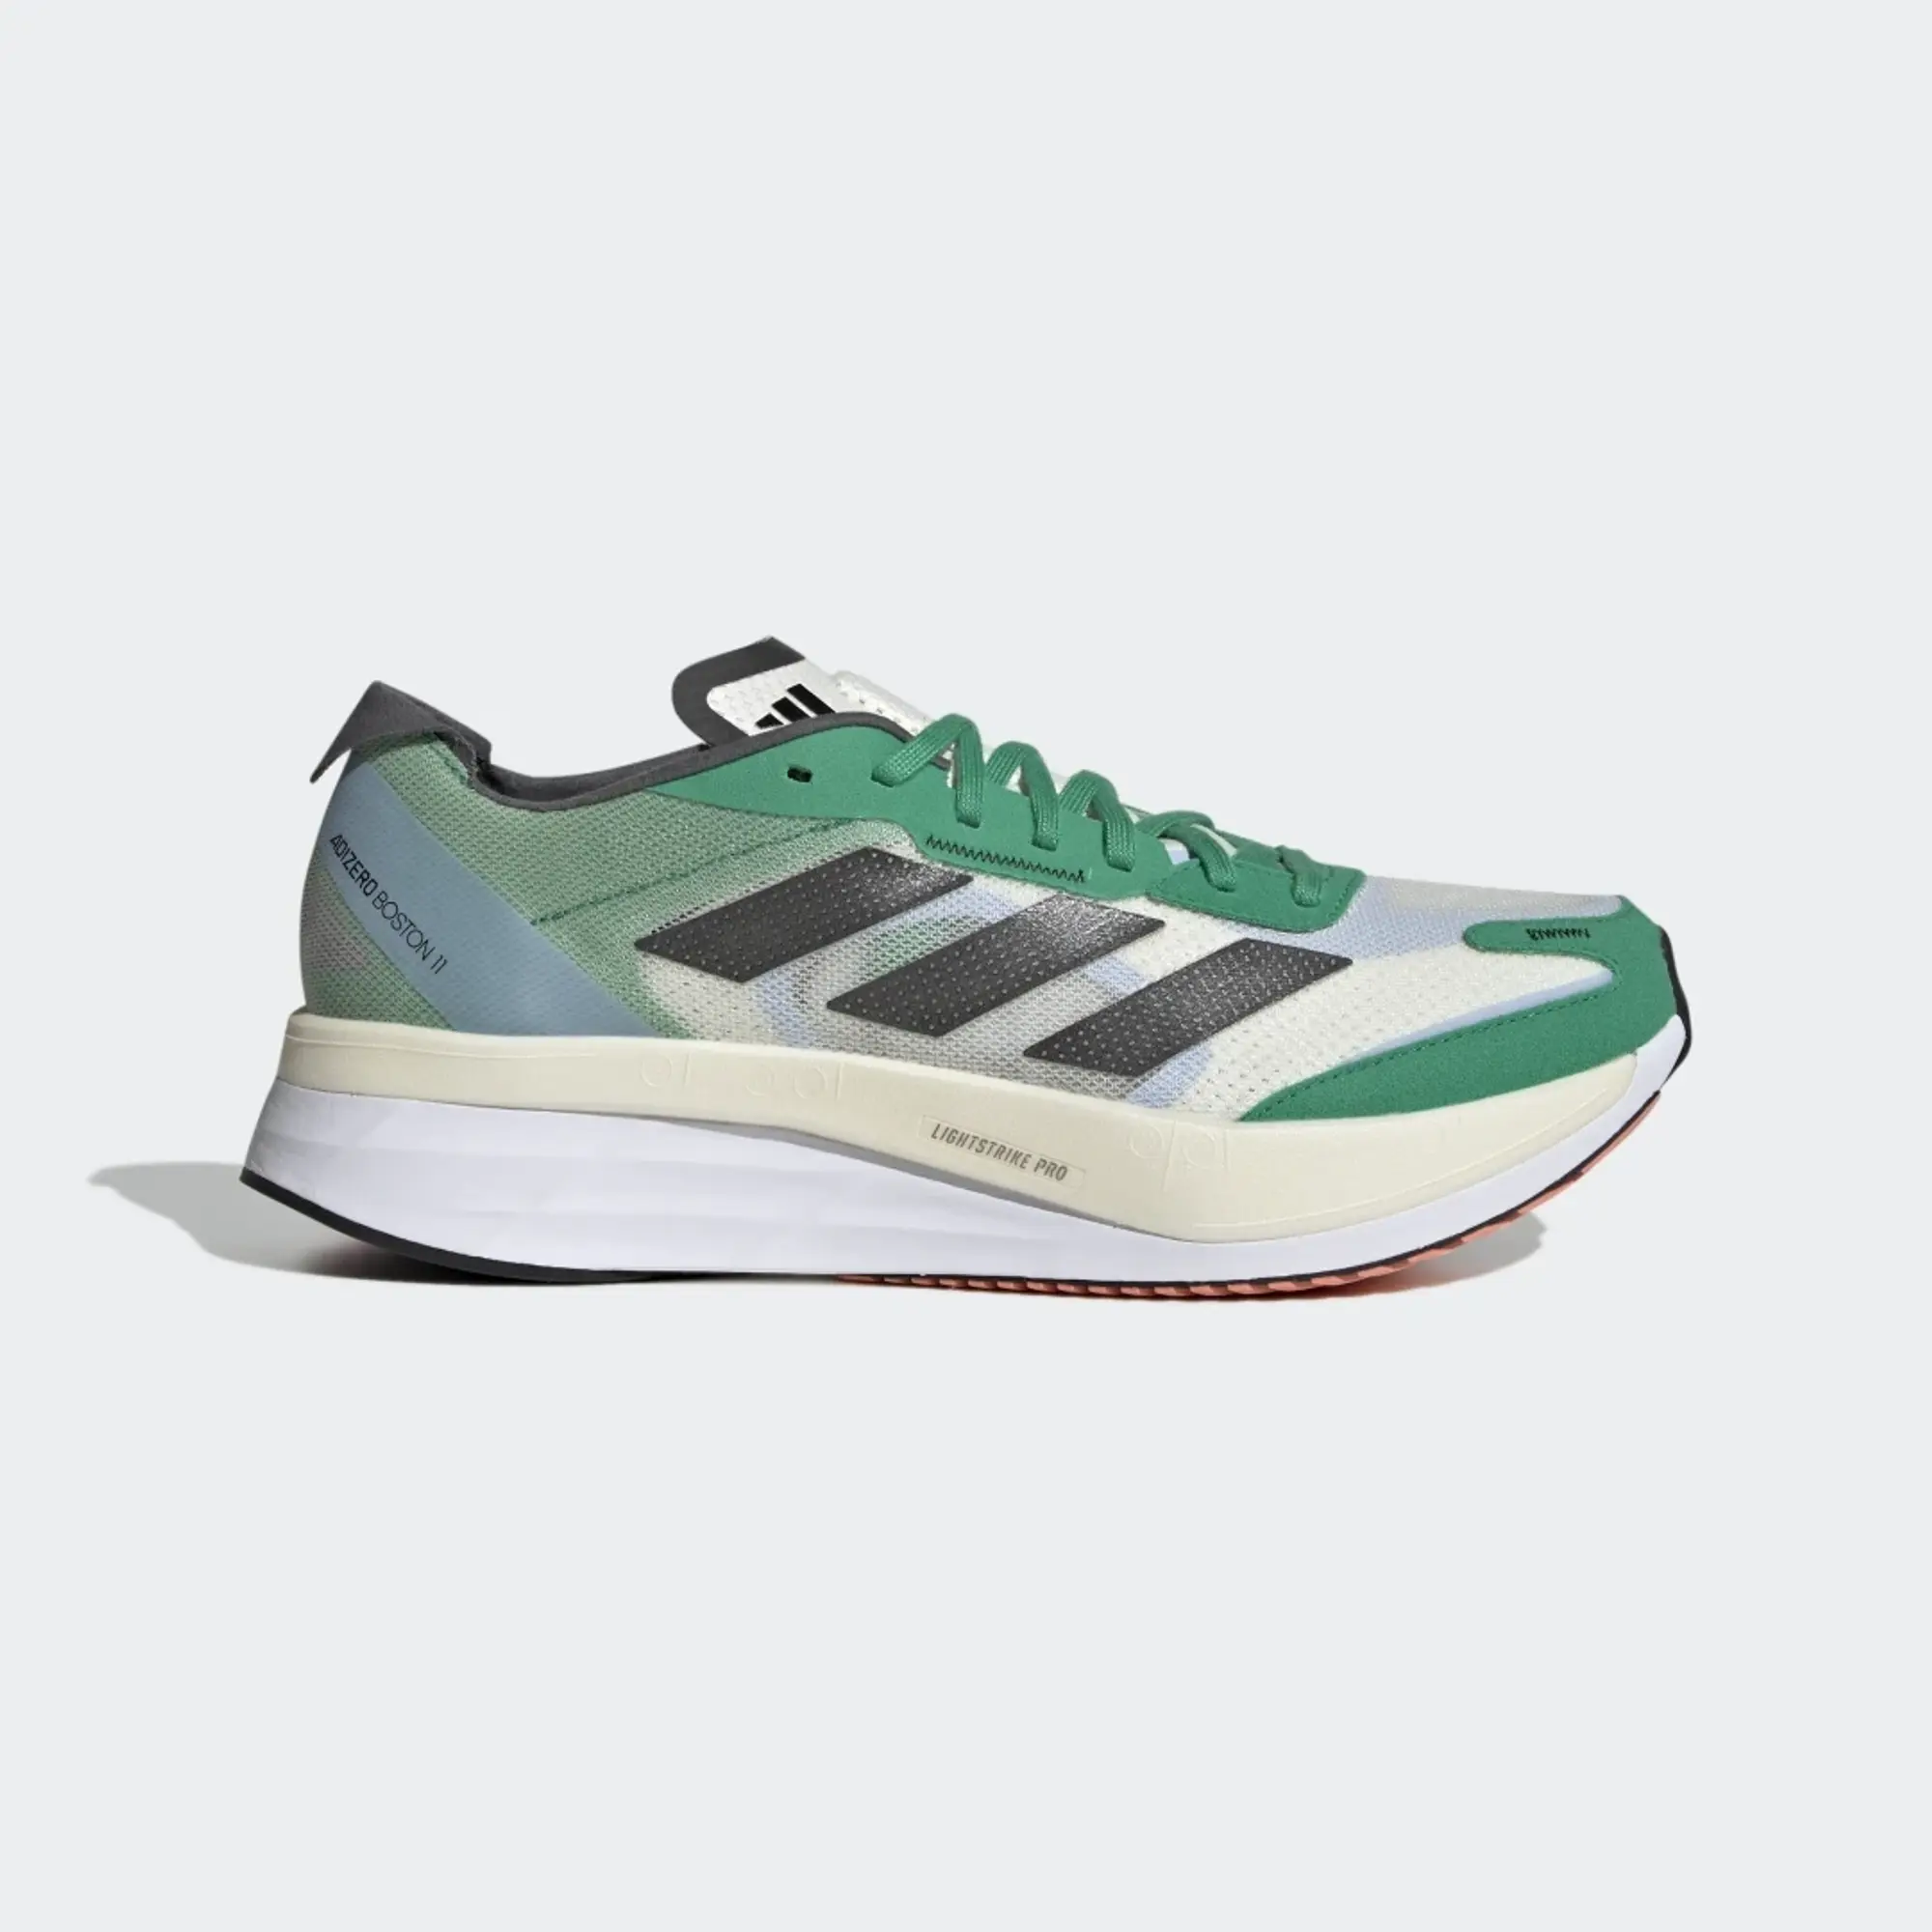 adidas Adizero Boston 11 Shoes - White Tint / Core Black / Court Green